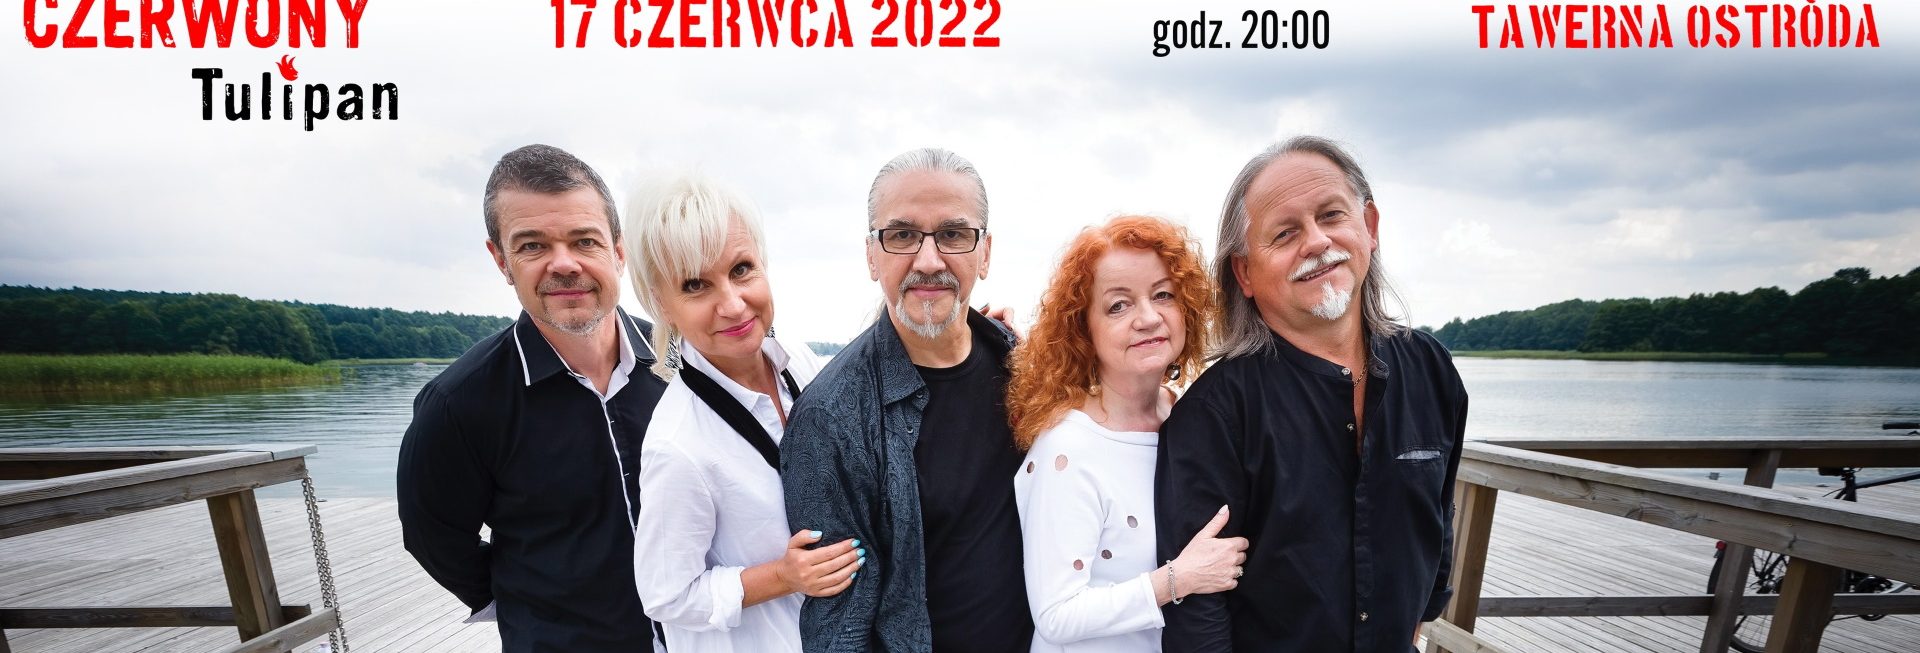 Plakat graficzny zapraszający do Ostródy na występ zespołu Czerwony Tulipan Ostróda 2022. 